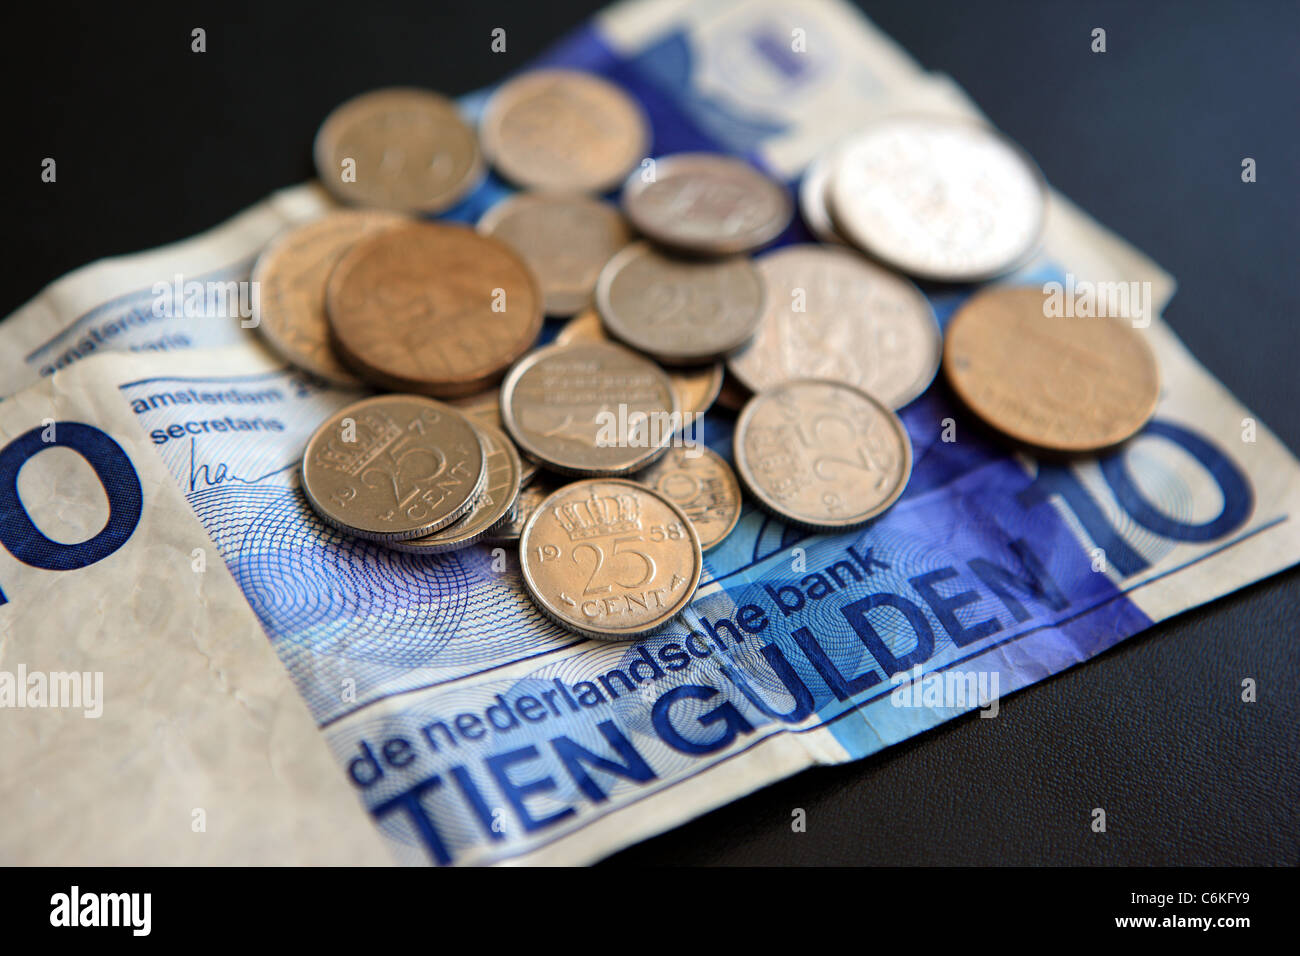 Florin billets et pièces, la monnaie officielle des Pays-Bas du 17e siècle  jusqu'en 2002 lorsqu'elle est remplacée par l'euro Photo Stock - Alamy